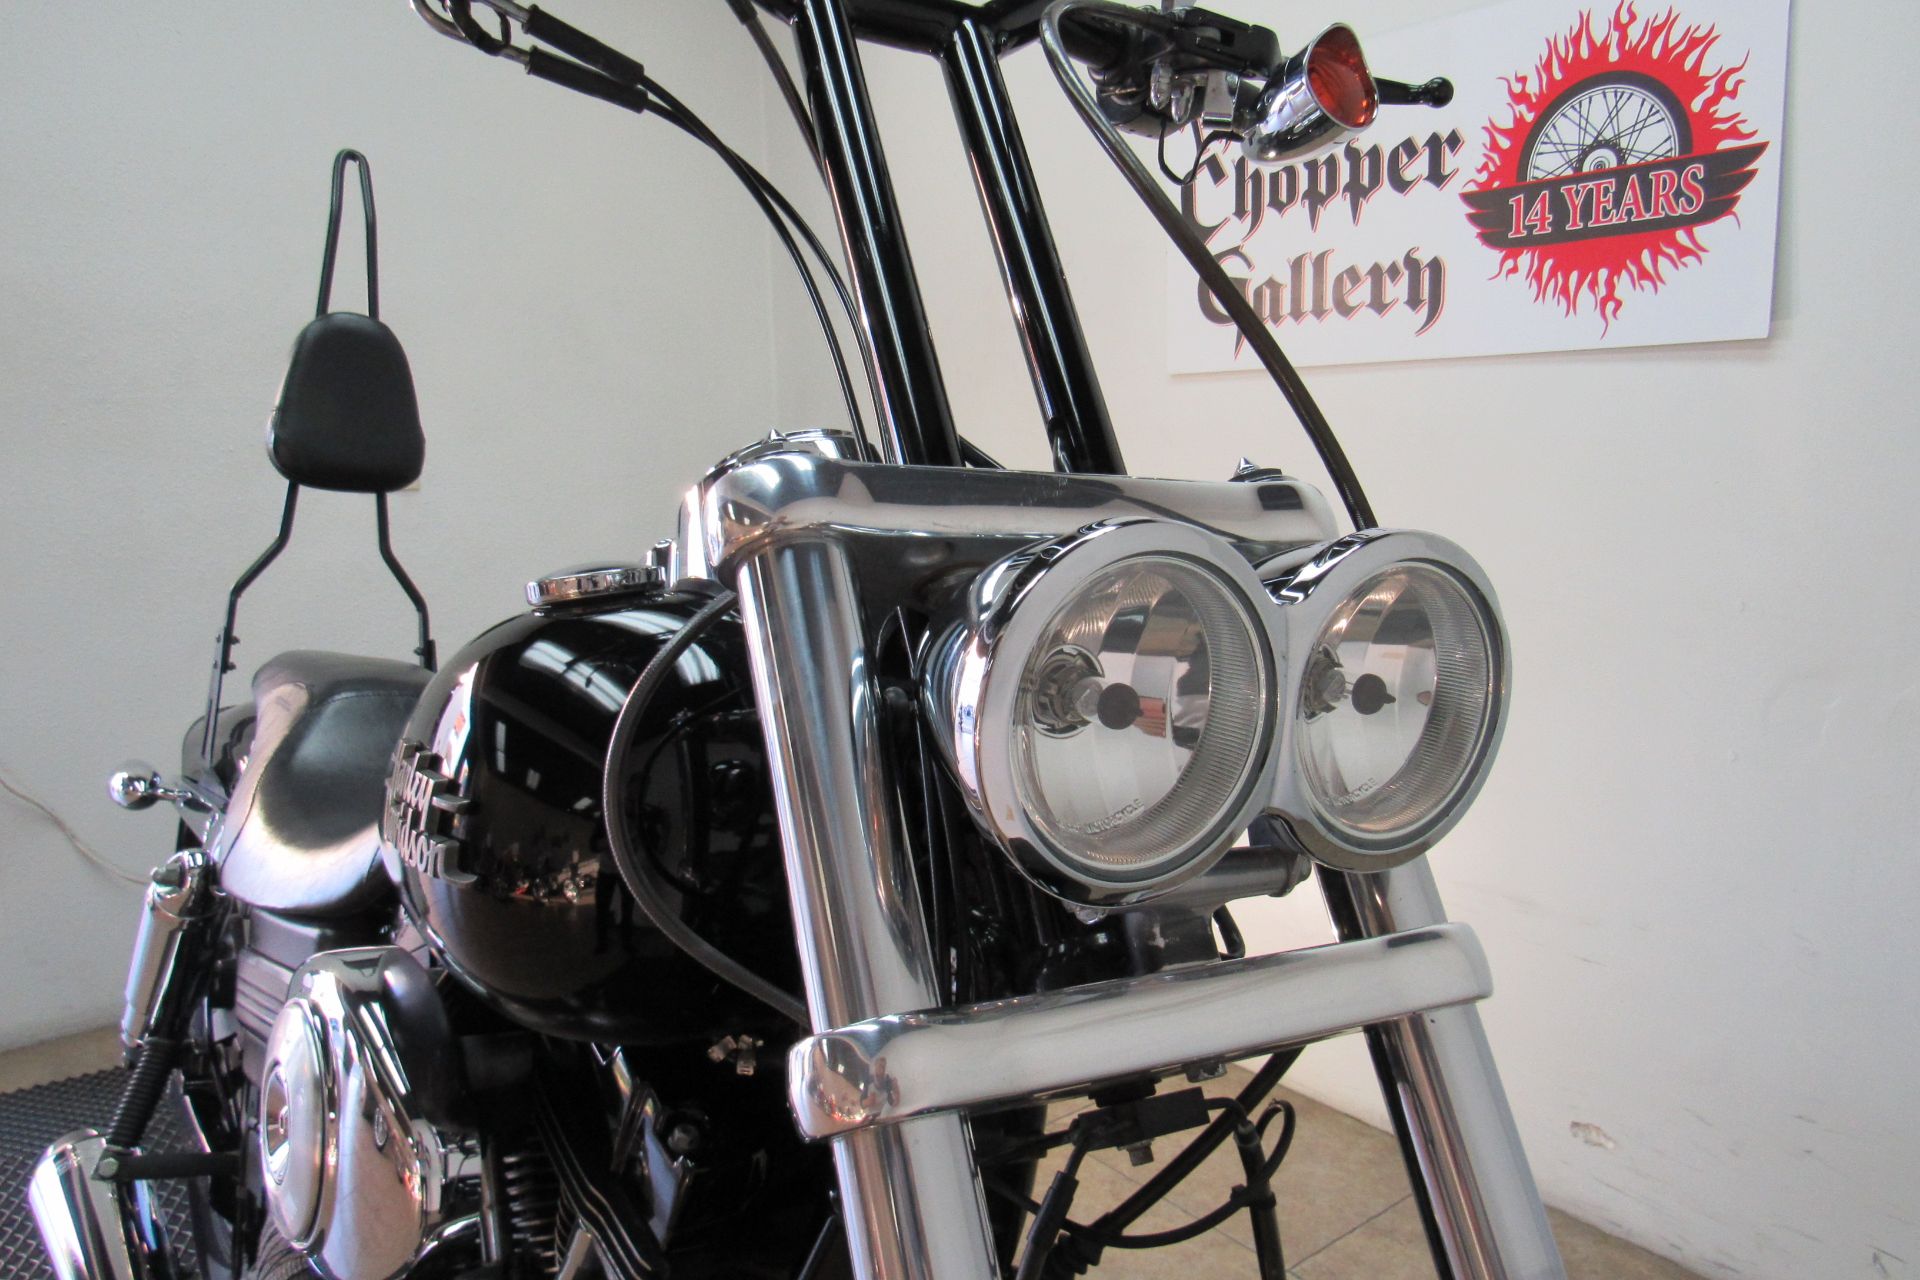 2013 Harley-Davidson Dyna® Fat Bob® in Temecula, California - Photo 16